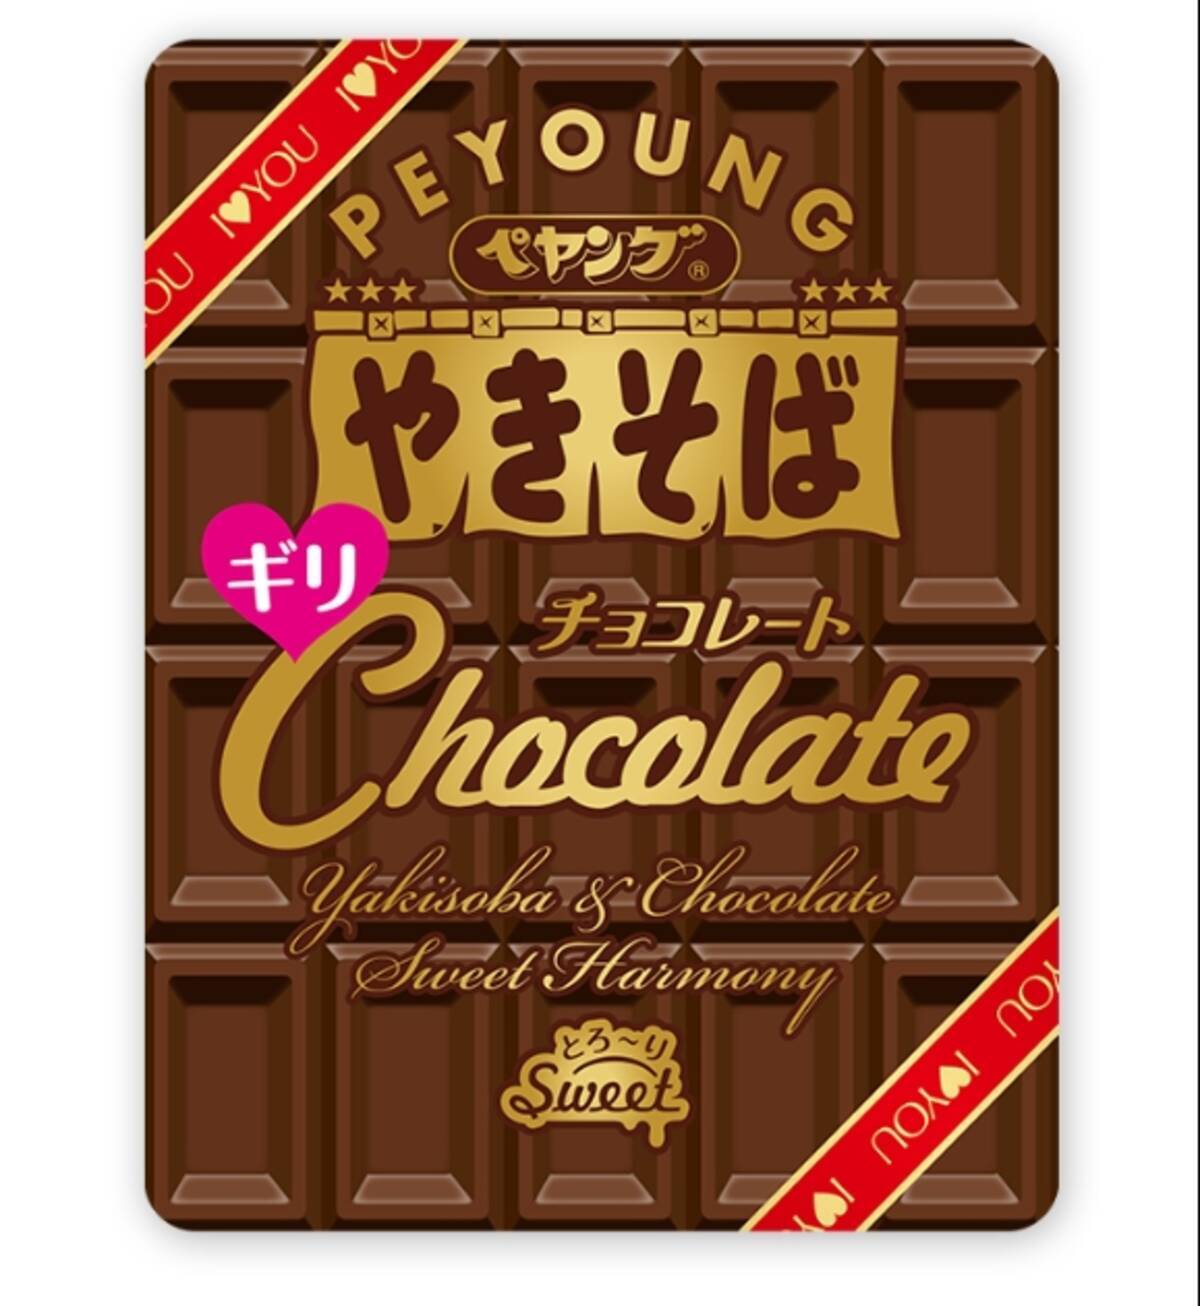 義理チョコはペヤング チョコ味のペヤング チョコレートやきそばギリ が新登場 16年12月8日 エキサイトニュース